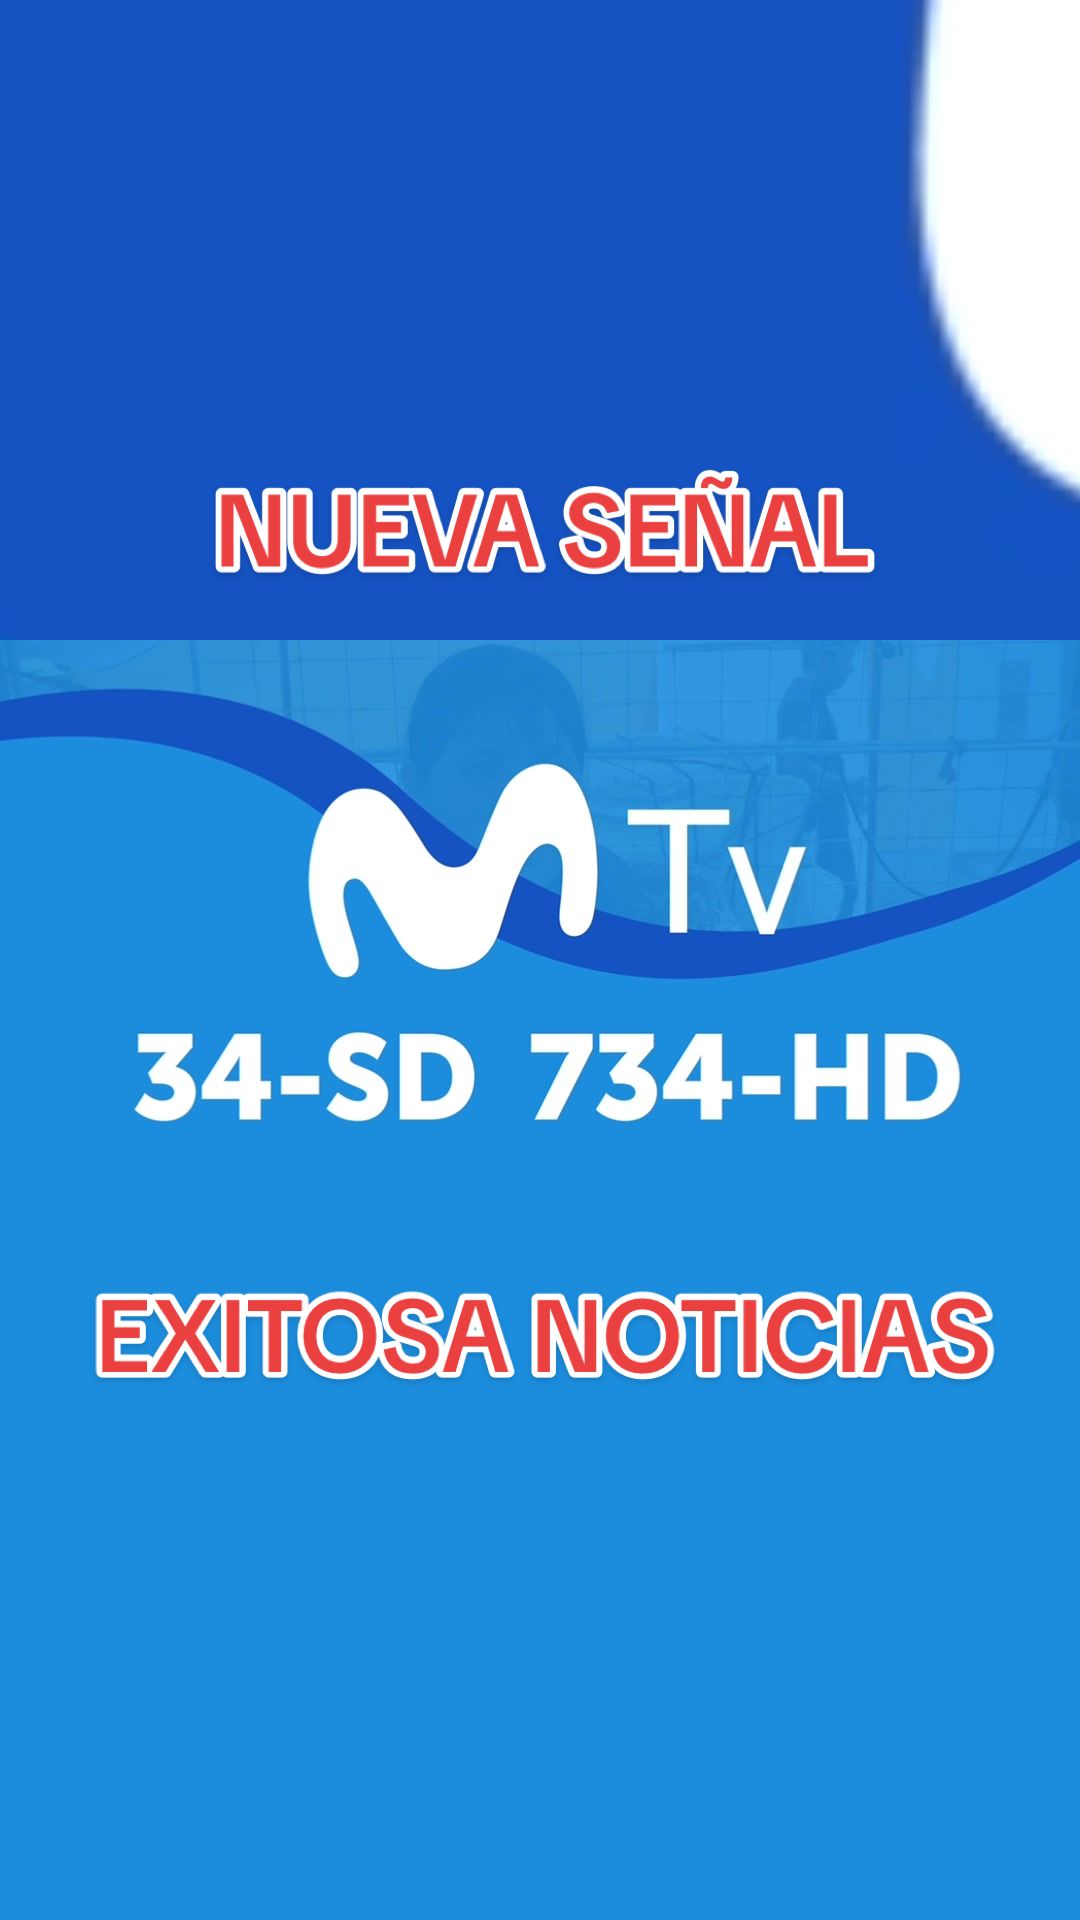 @Exitosa Noticias